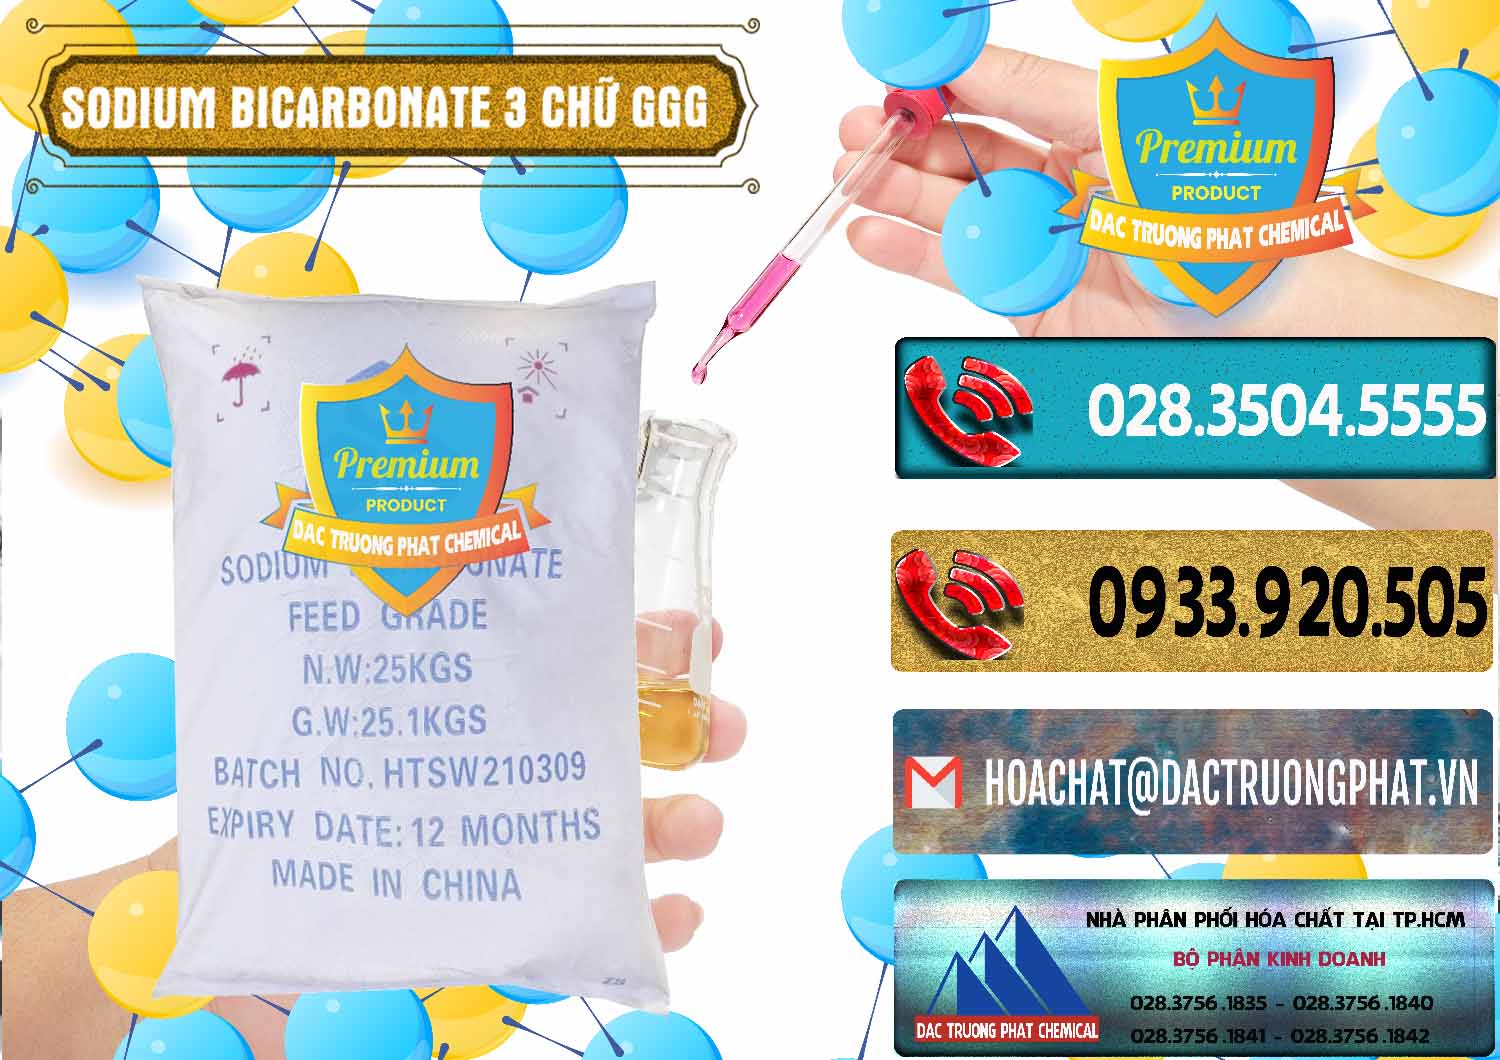 Chuyên bán _ cung cấp Sodium Bicarbonate – Bicar NaHCO3 Food Grade 3 Chữ GGG Trung Quốc China - 0259 - Công ty kinh doanh - cung cấp hóa chất tại TP.HCM - hoachatdetnhuom.com